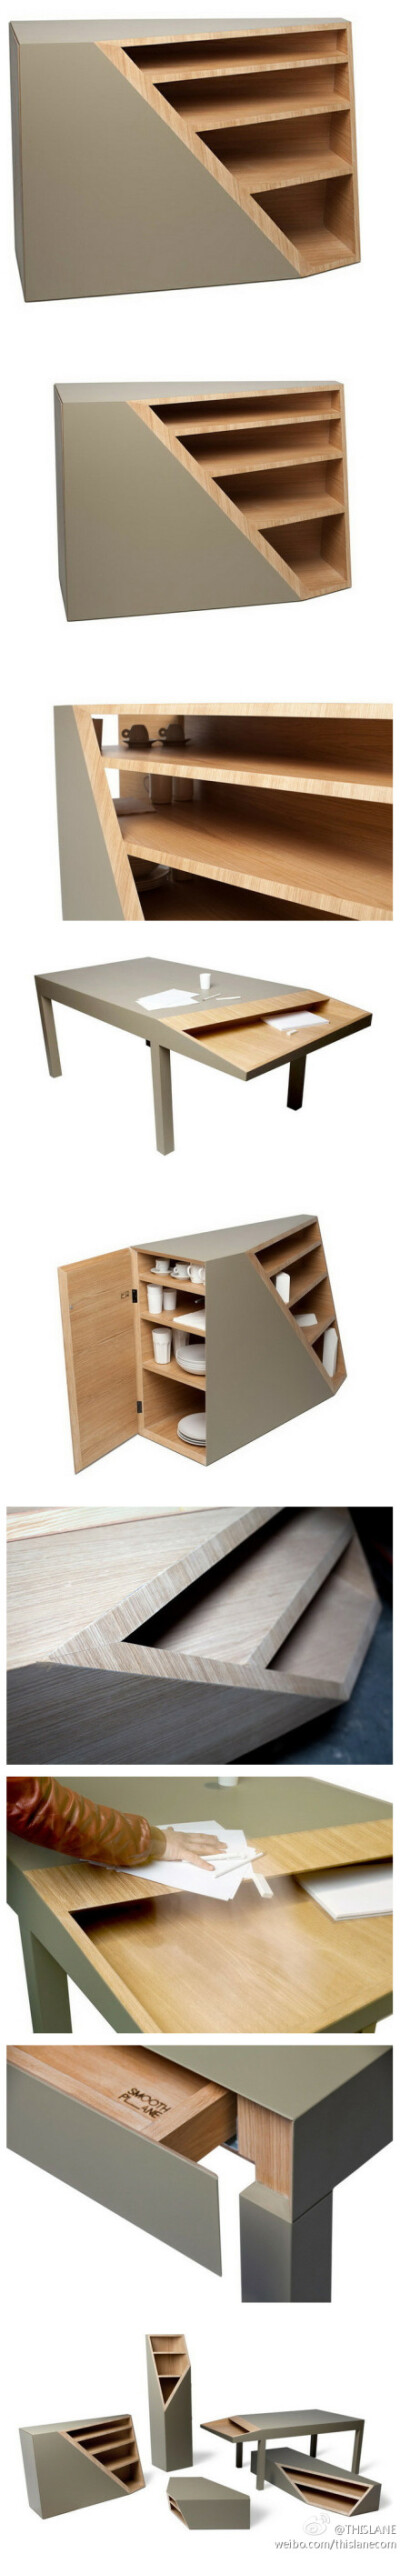 意大利设计师 Alessandro Busana设计了一系列切线（cutline）家具，围绕着一般家具款式，进行了大胆激进的“切割”概念设计，切角的设计感觉让人觉得很新鲜，整体感觉也非常简洁。